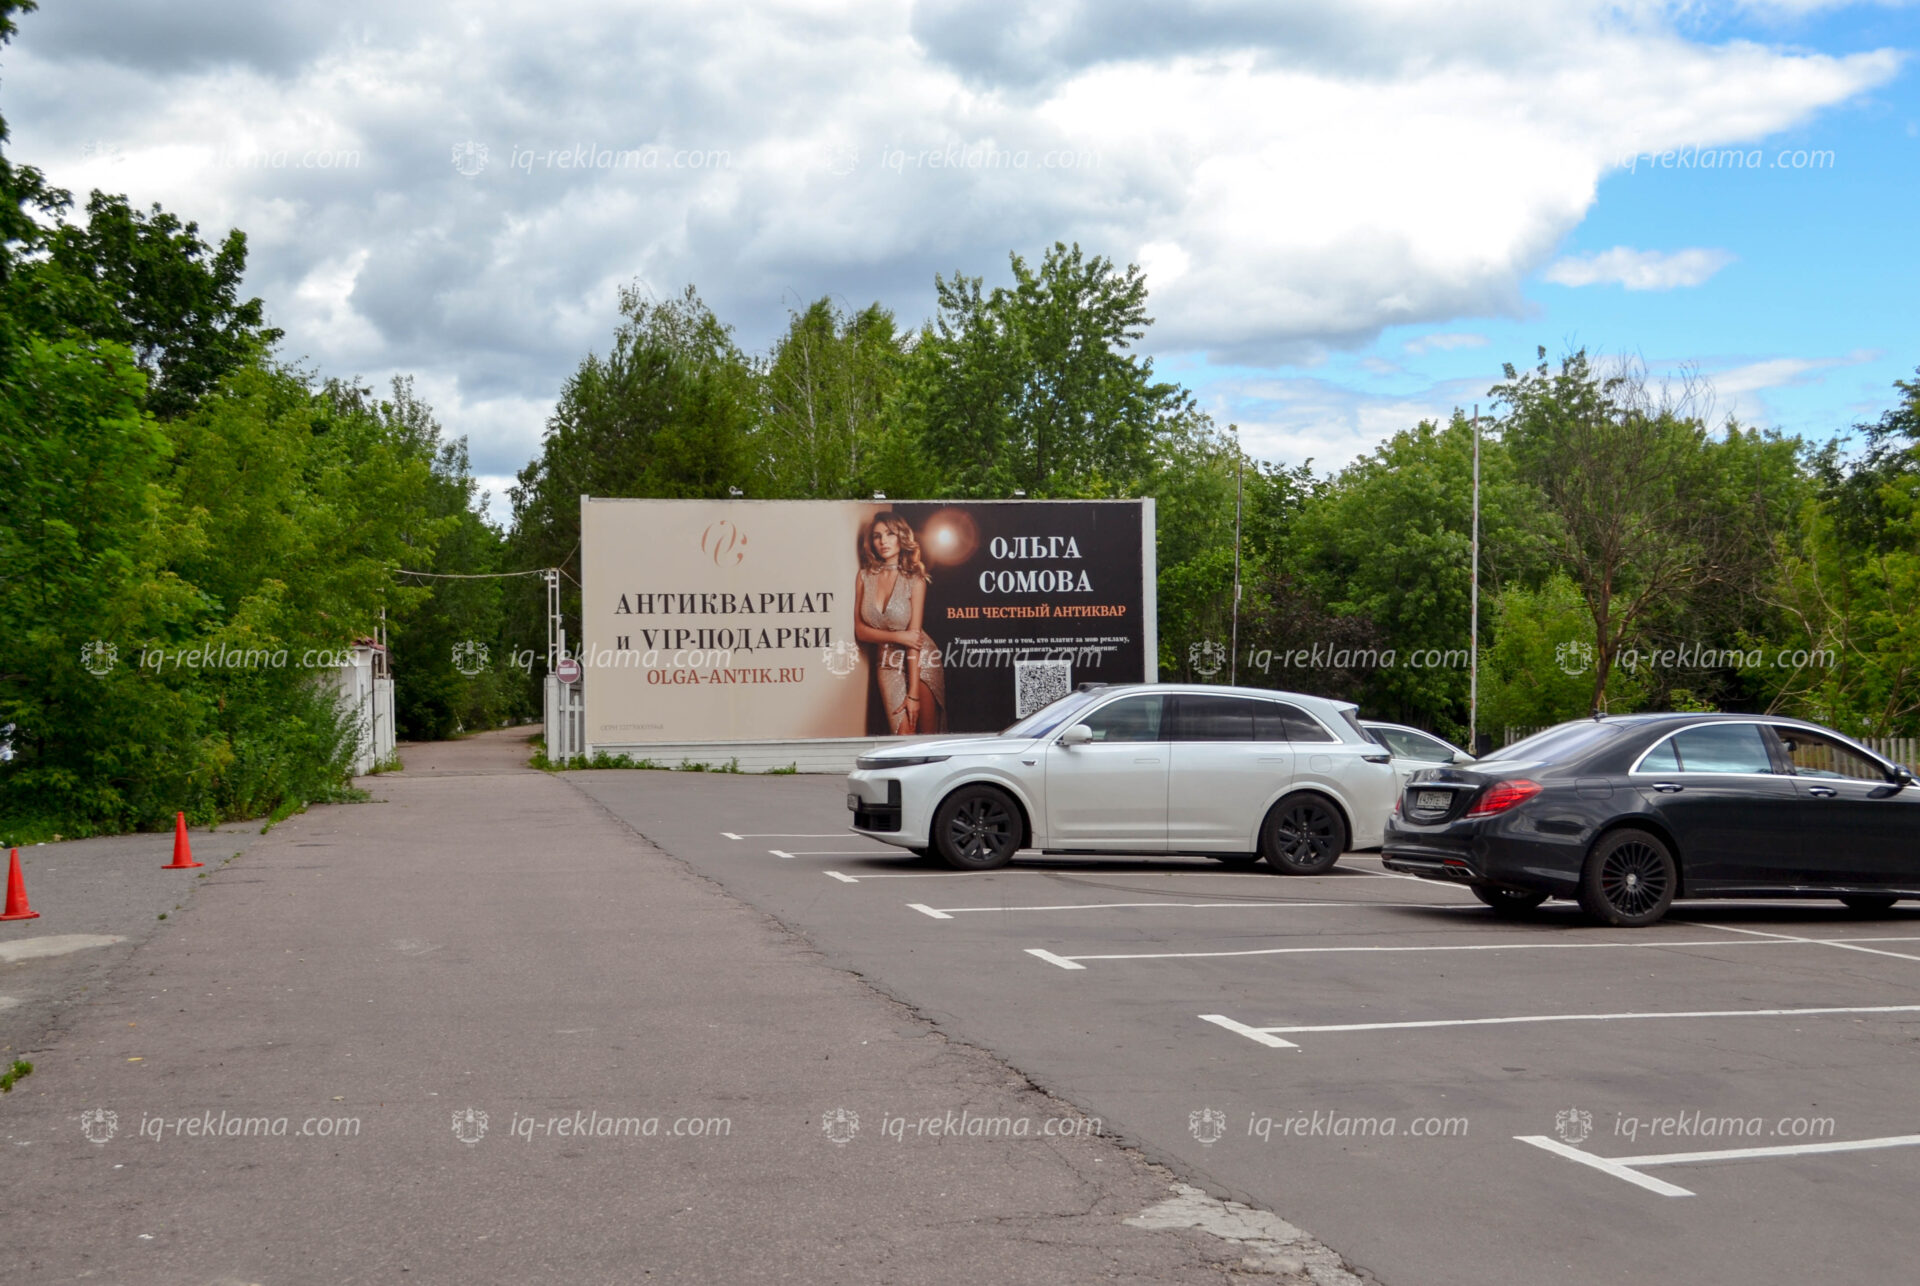 Наружная реклама в ресторане «Причал» на «Рублевке» антиквара Ольги Сомовой